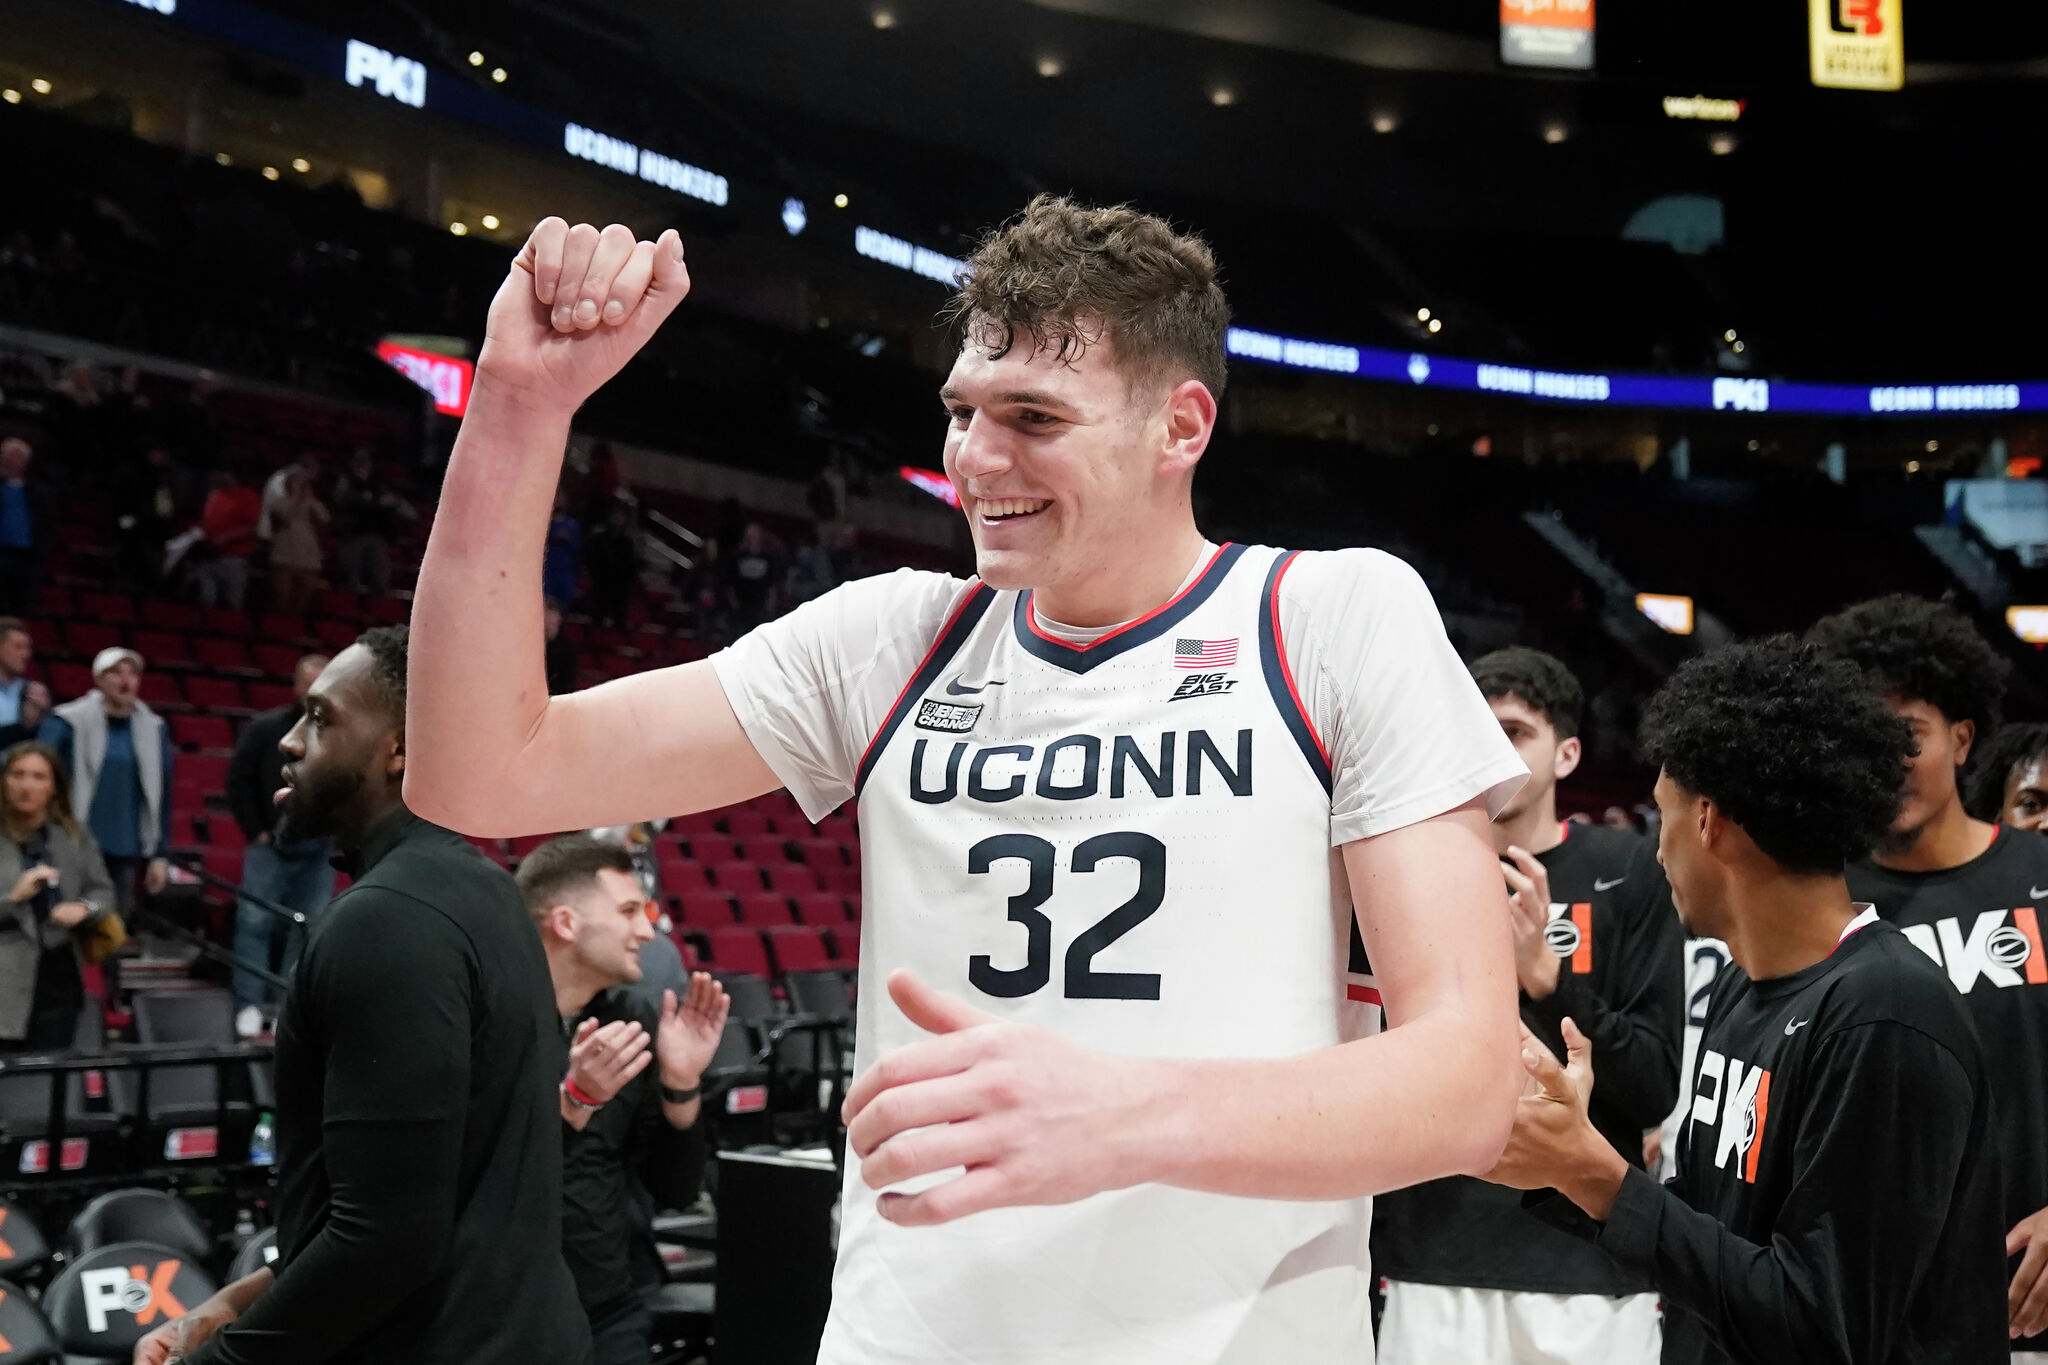 Despite 21 points from UConn recruit Donovan Clingan, Connecticut